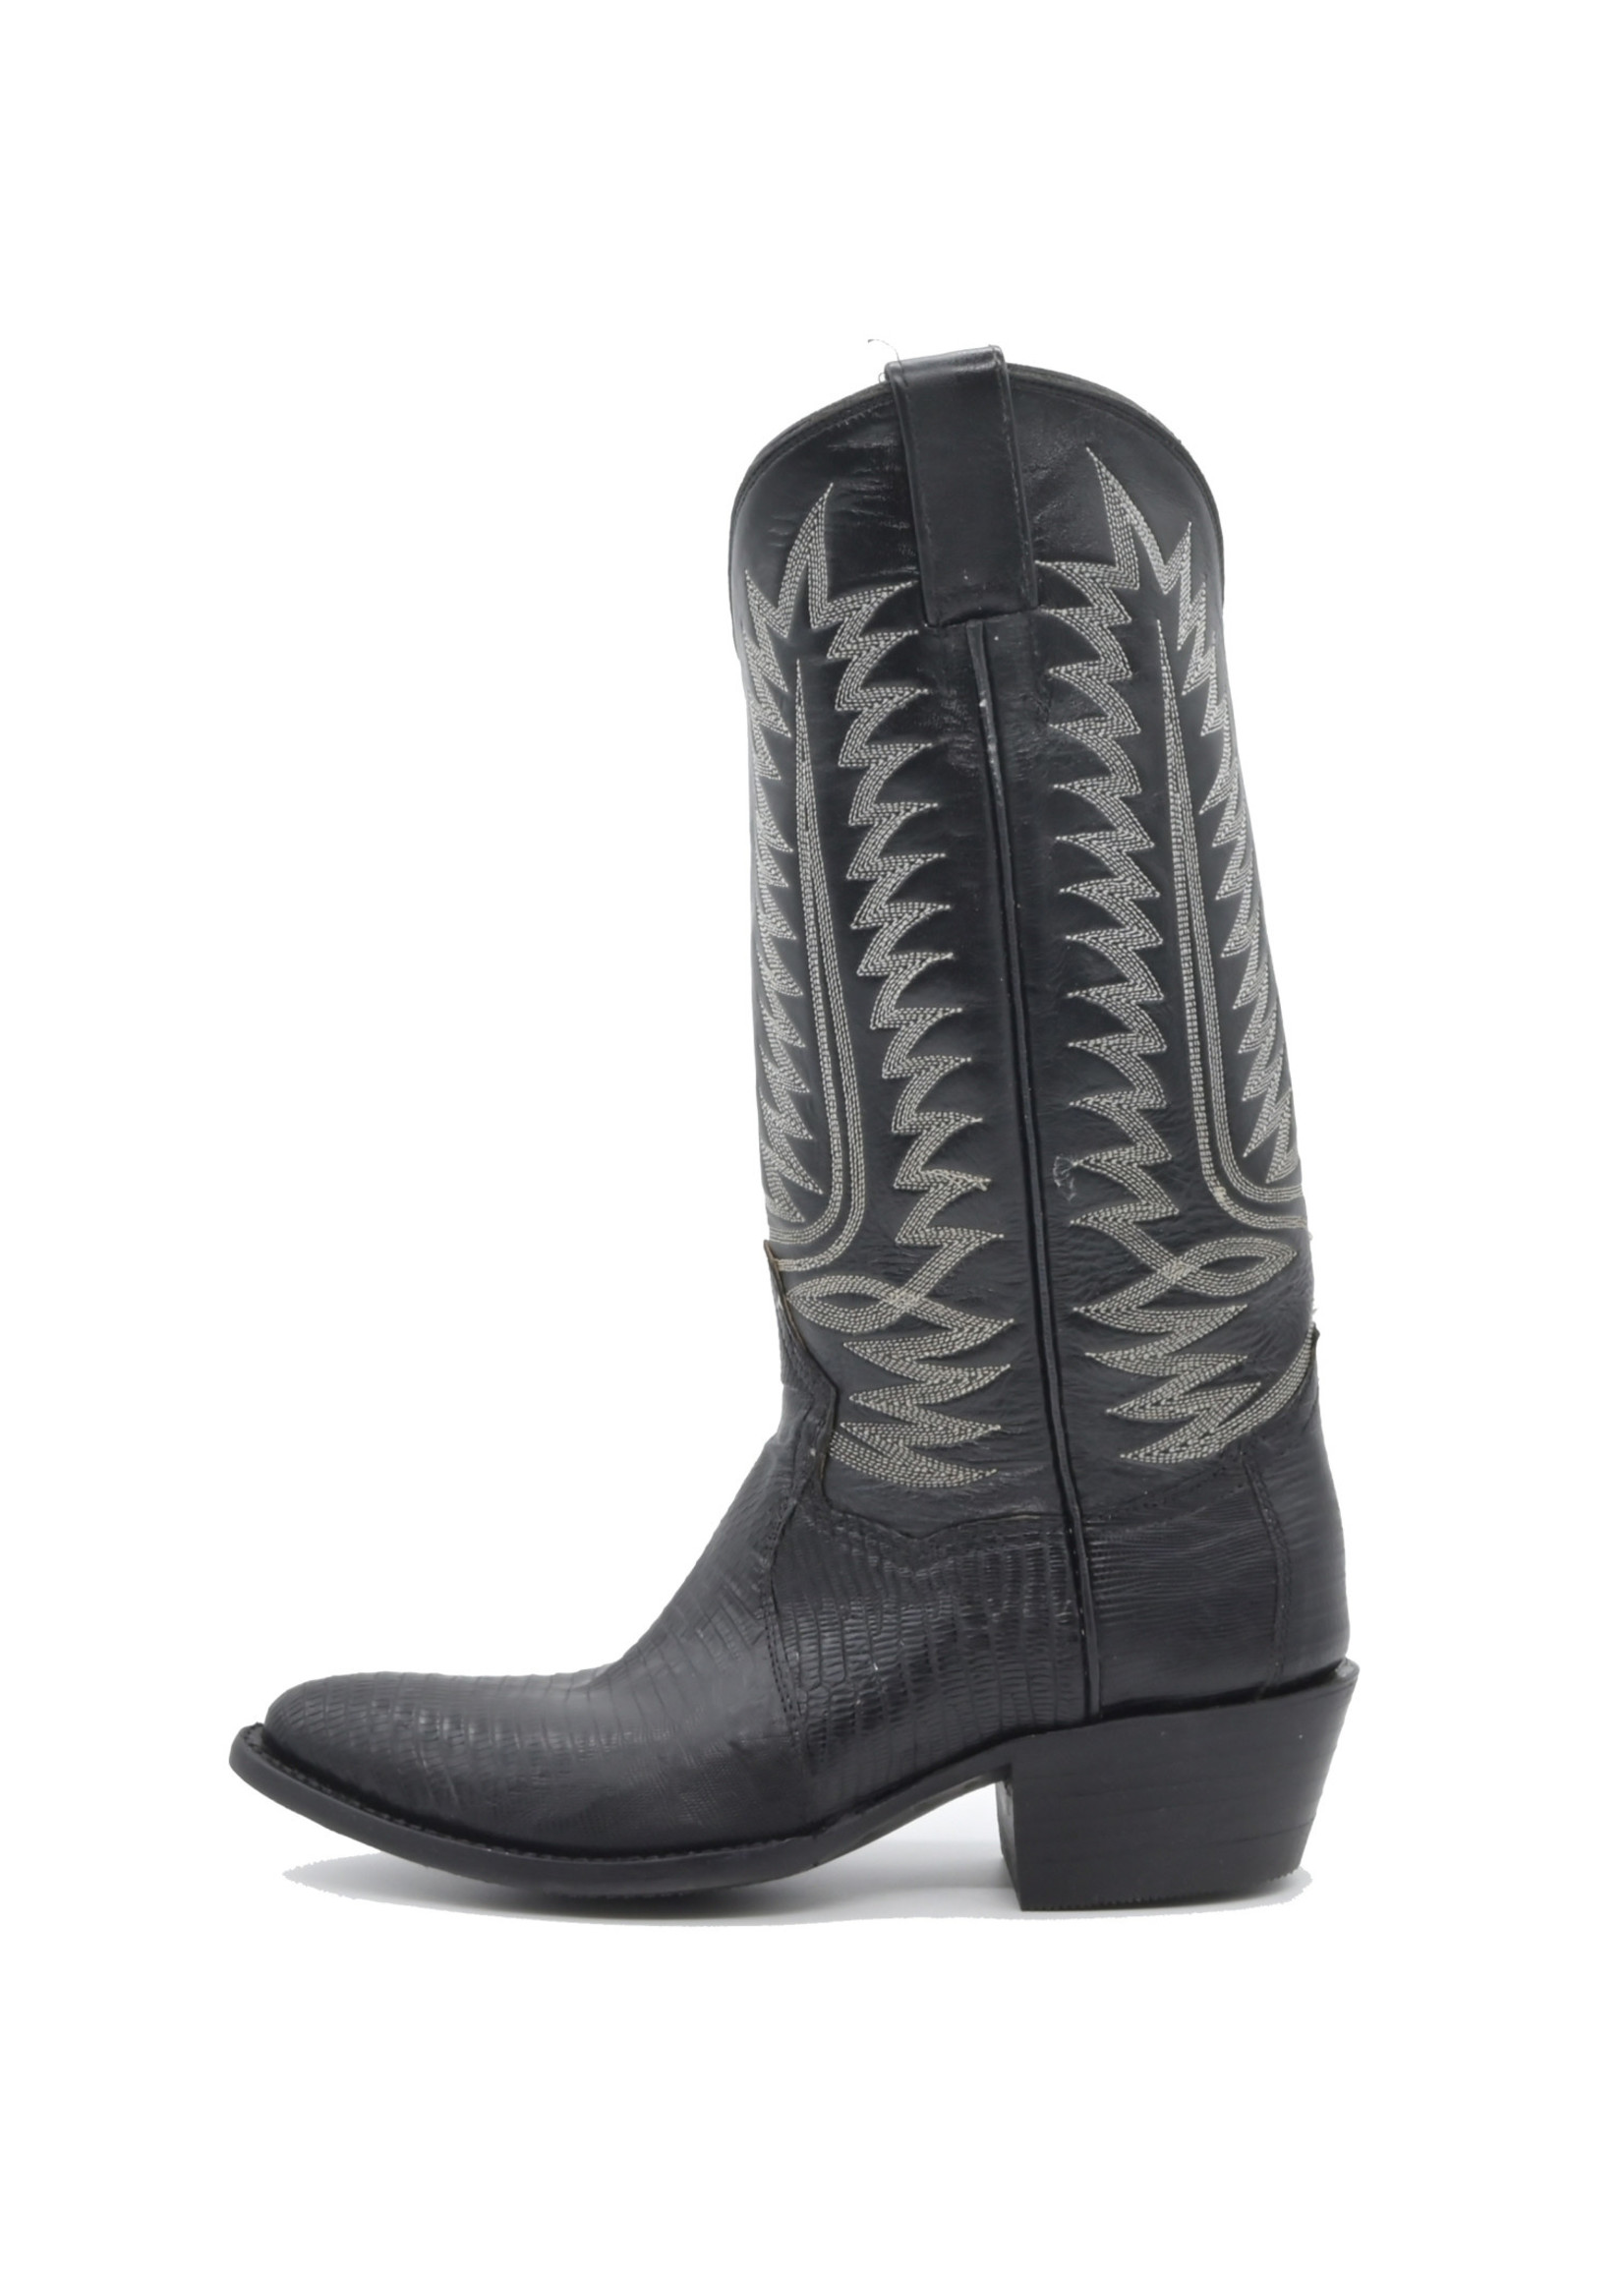 844-Men's Genuine Black Lizard Boots Sizes(7D-7.5D-8D-8.5D-8.5EE-9EE)